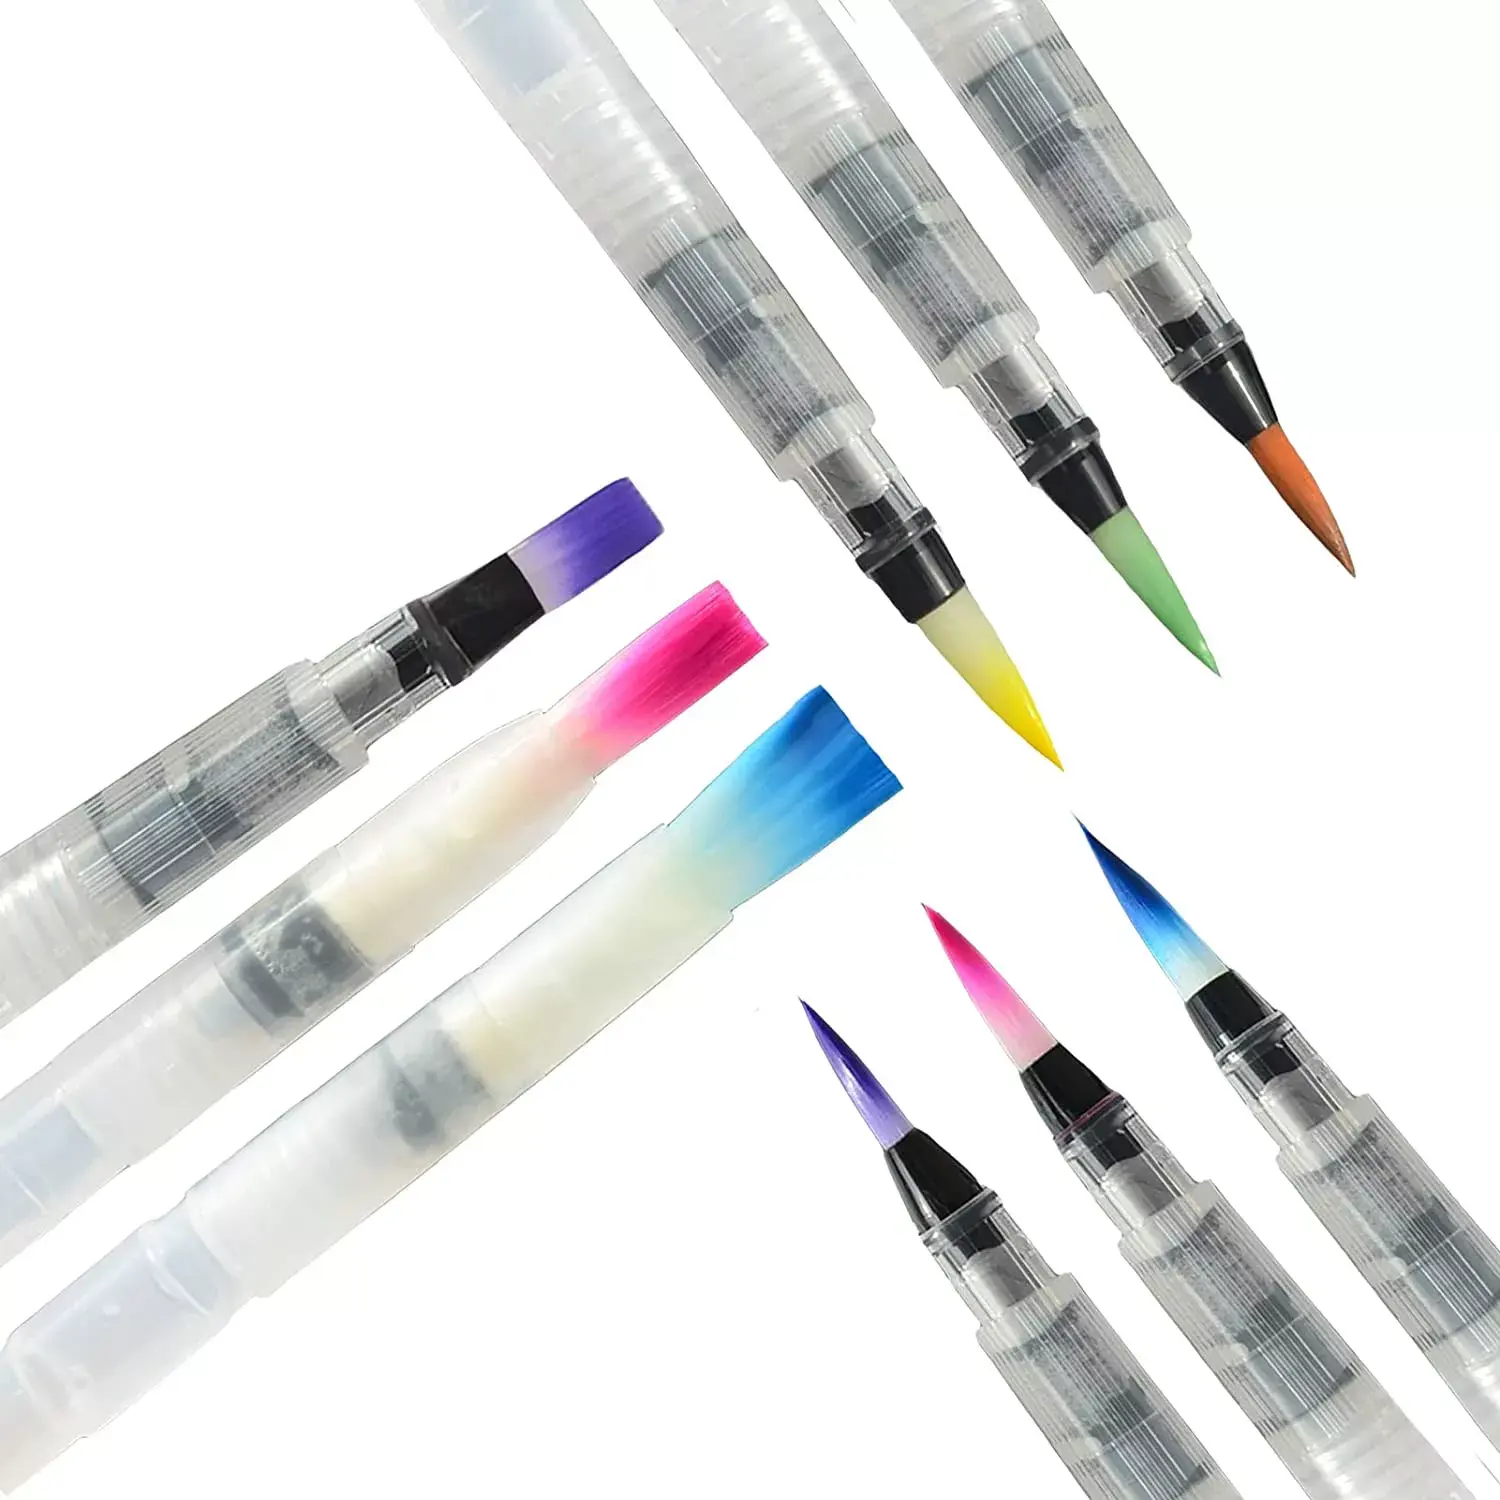 Cixi üstün 3/6 adet Set sanatçı su kaynağı fırça kalem MS-011-3/6 6 boyutları yuvarlak ve düz Tps